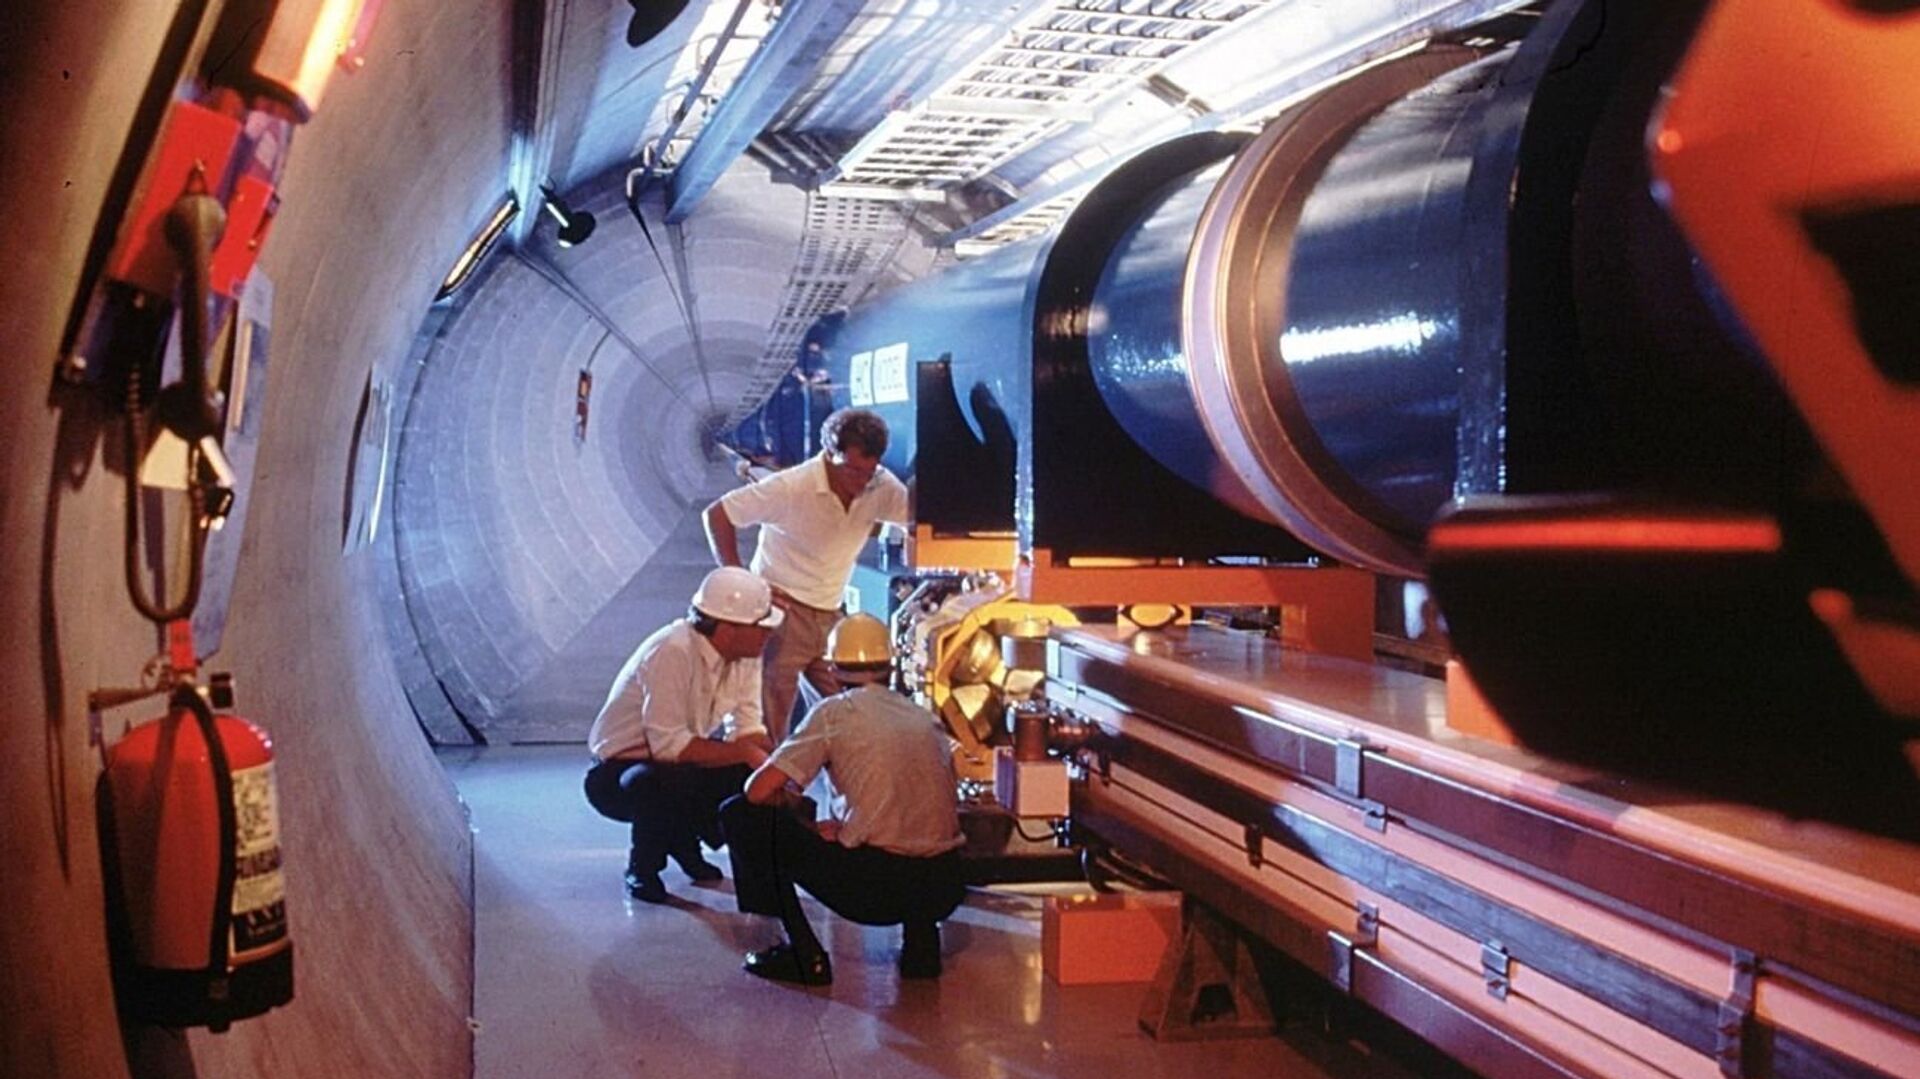 Najveća i najvažnija istraživanja CERN-a obavljaju se u Velikom hadronskom sudaraču, podzemnom tunelu dugačkom 27 kilometara na granici Švajcarske i Francuske - Sputnik Srbija, 1920, 02.01.2022